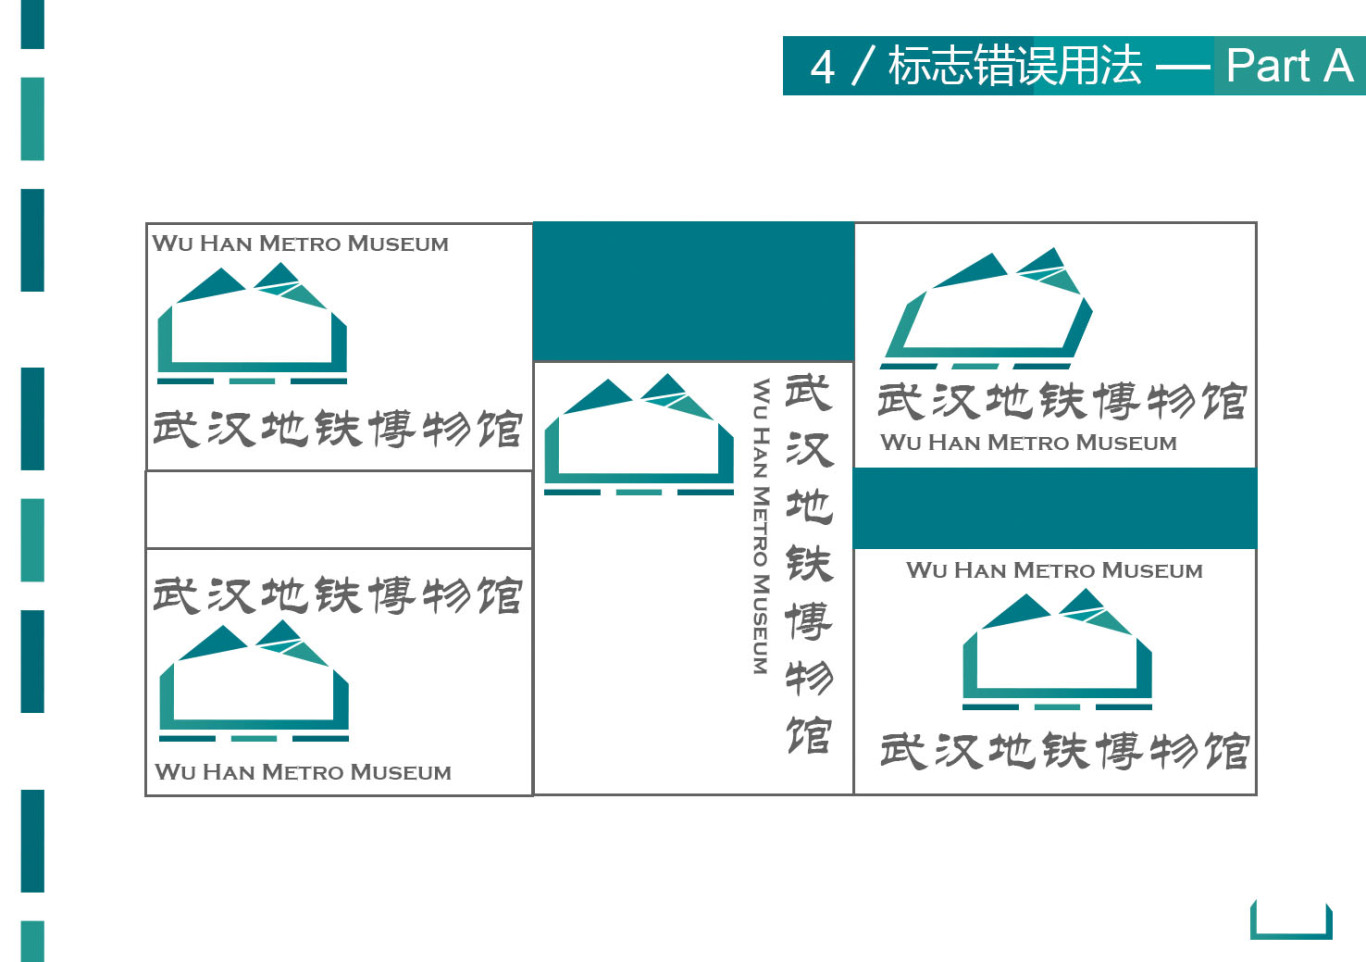 武漢地鐵博物館視覺識別設計圖1